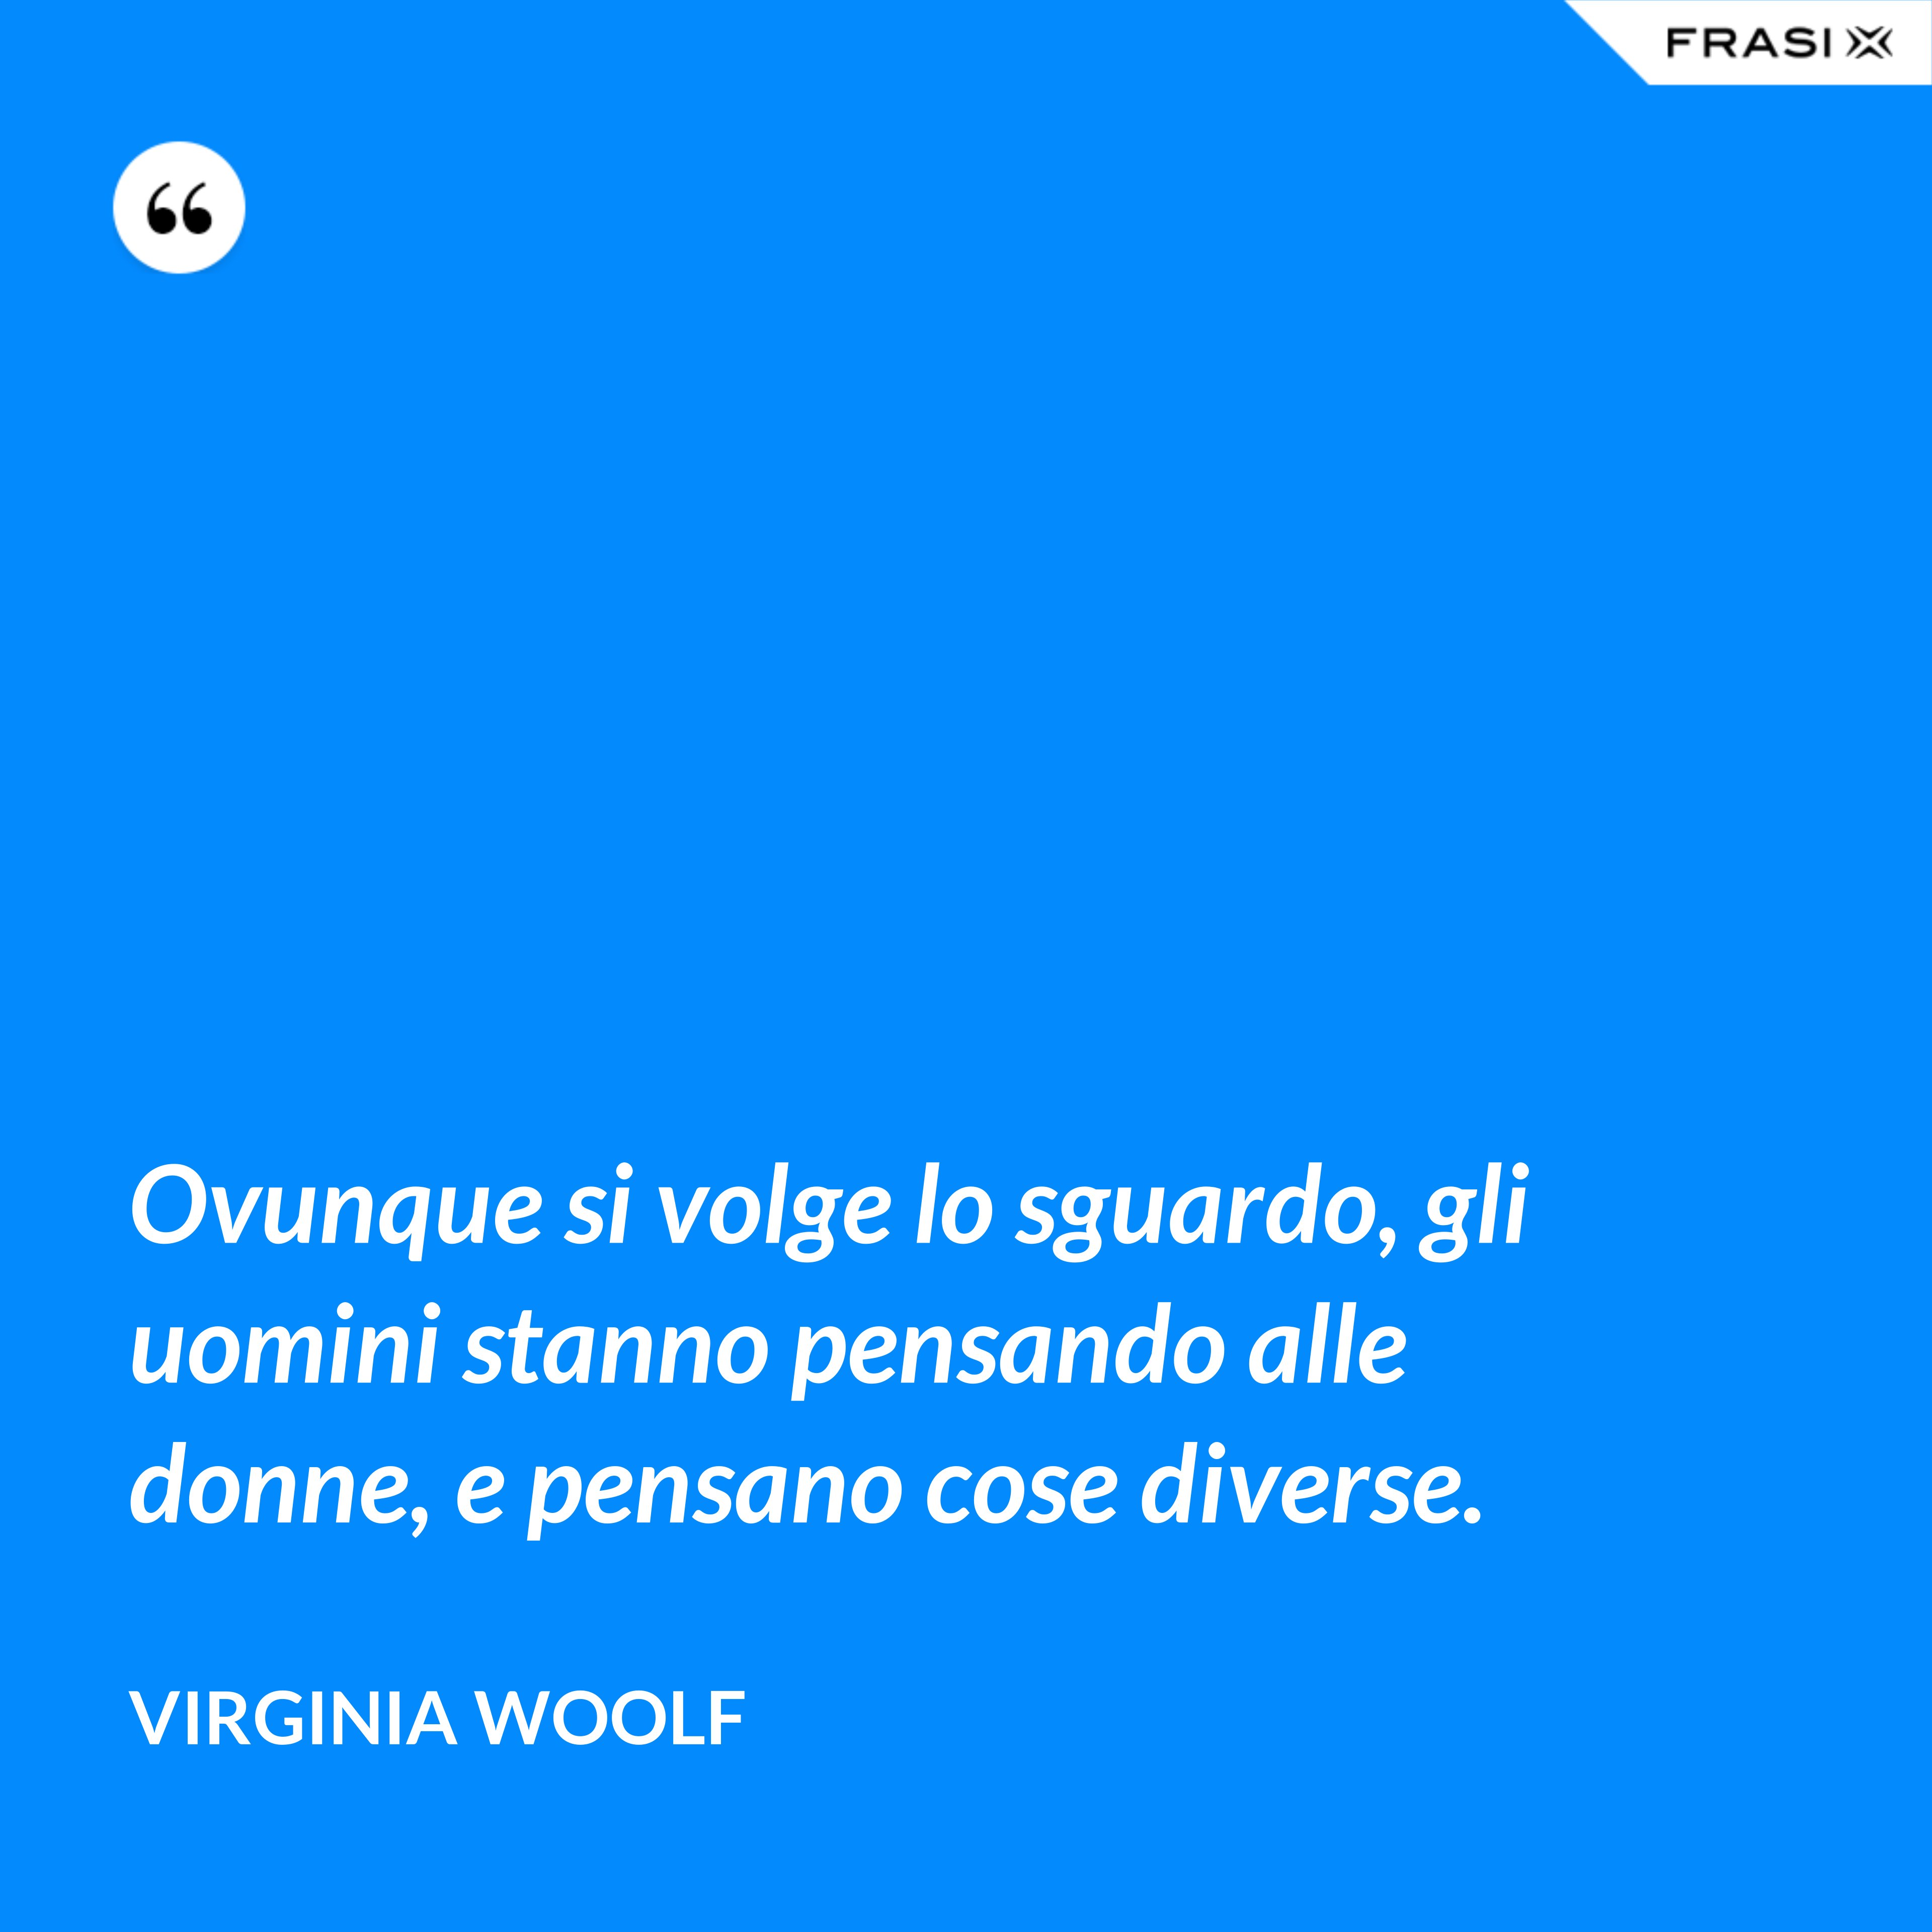 Ovunque si volge lo sguardo, gli uomini stanno pensando alle donne, e pensano cose diverse. - Virginia Woolf